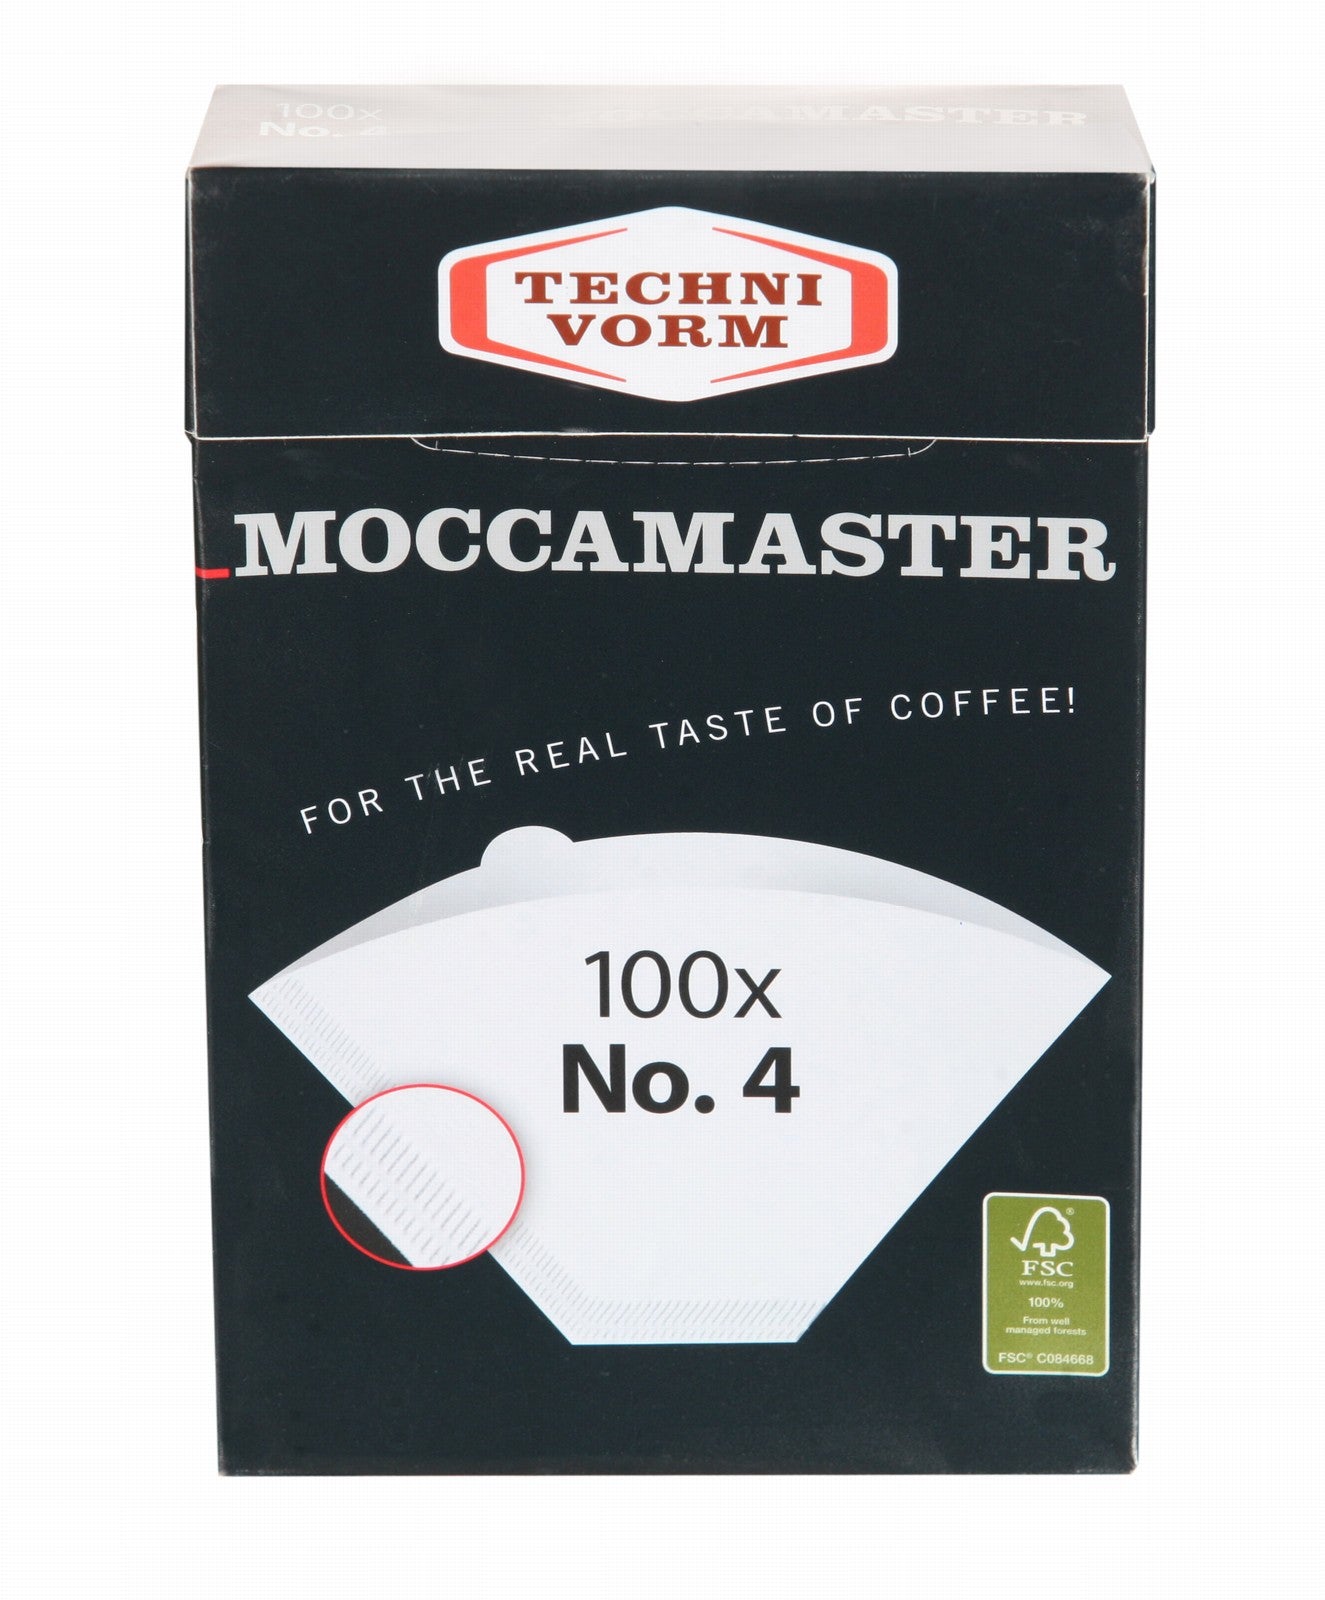 Moccamaster Kaffeefilter No. 4